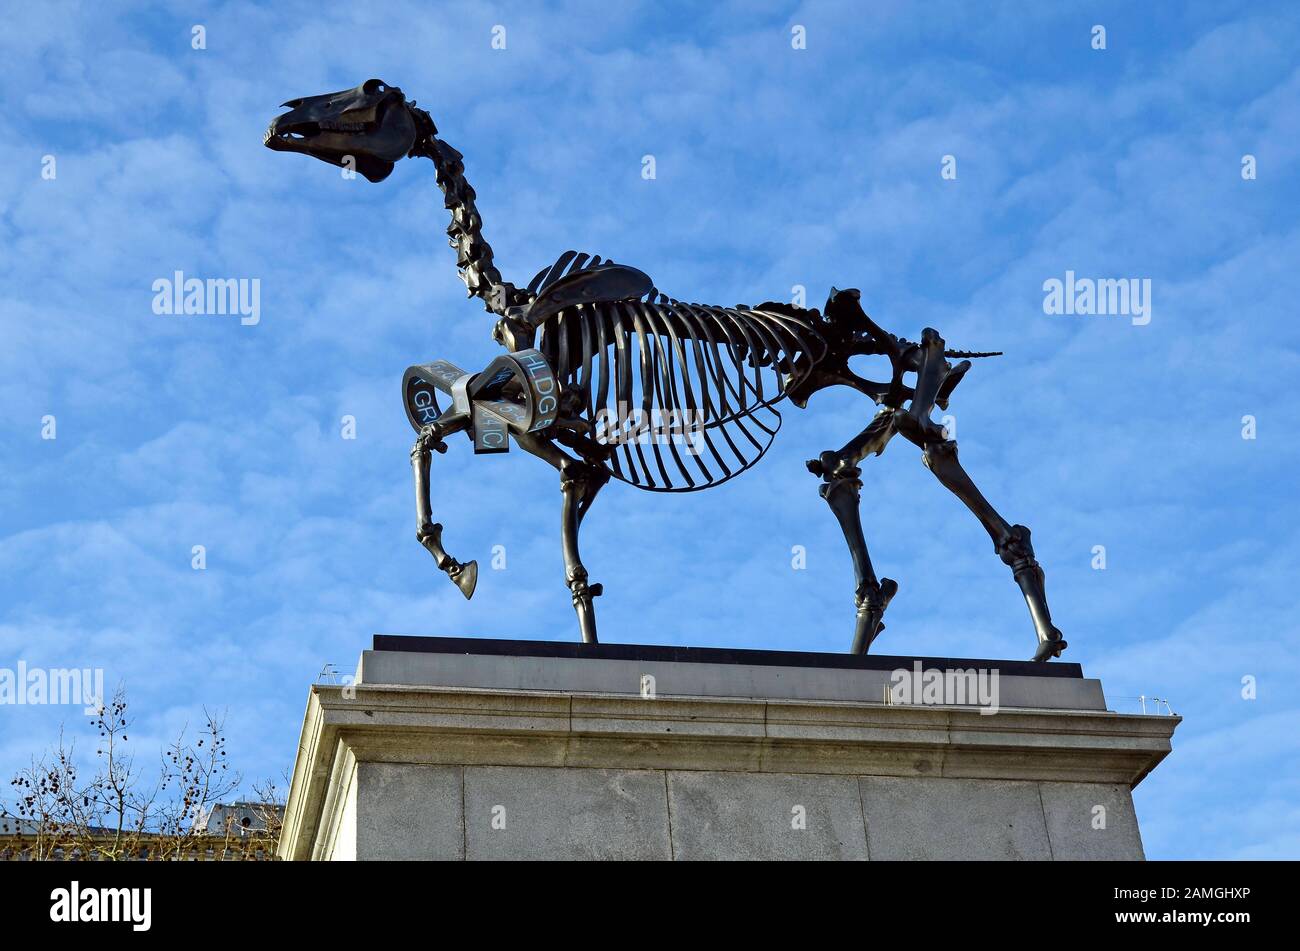 Londres, Royaume-Uni - 19 janvier 2016 : sculpture moderne sur quatrième plinthe, squelette de cheval sans rien de l'artiste Hans Haacke sur Trafalgar Square Banque D'Images